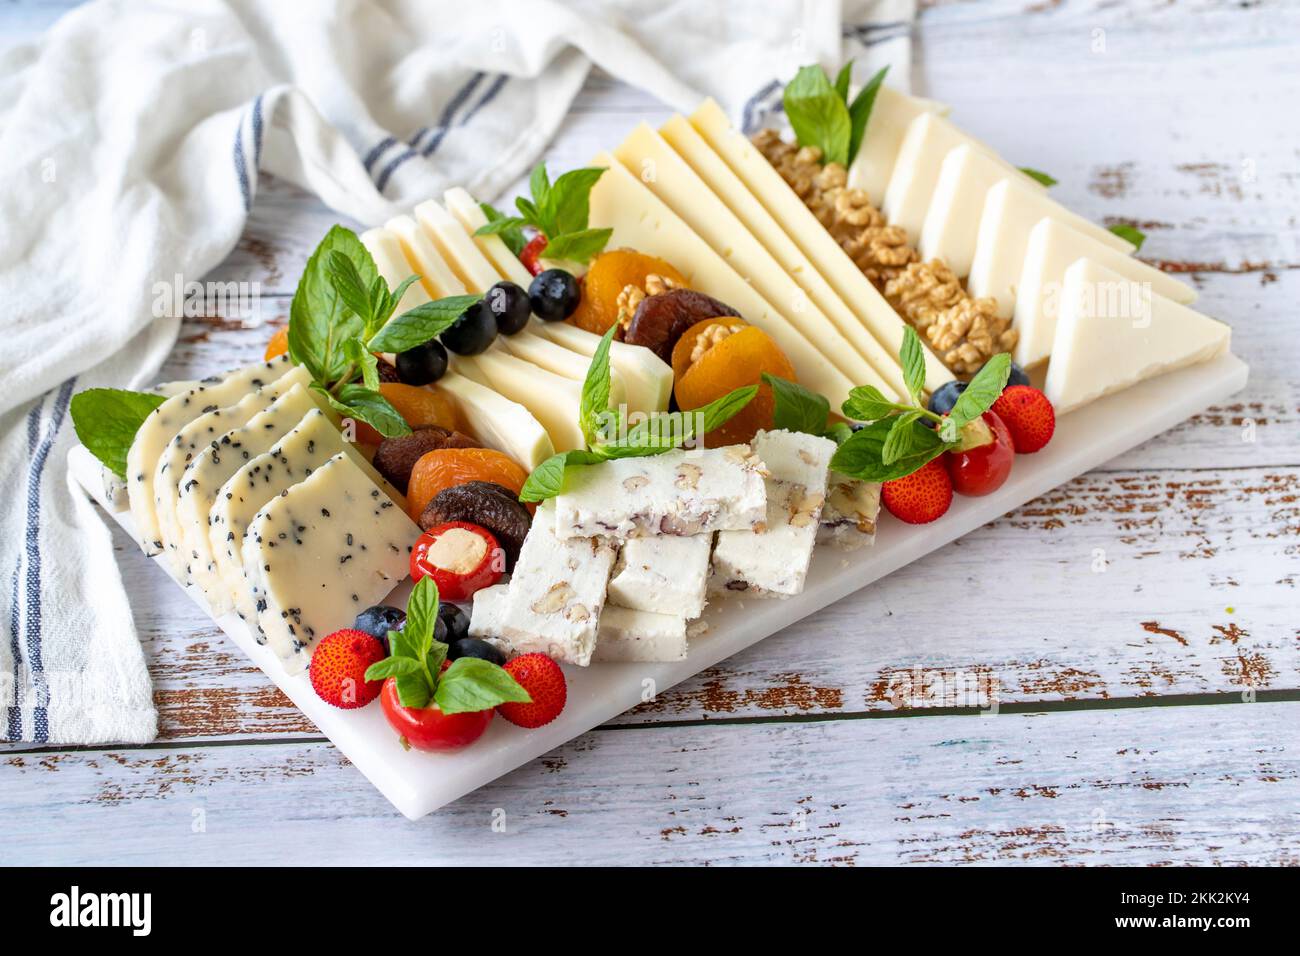 Assiette de fromages mélangés sur parquet. Délicieux assortiment de fromages. Camembert, Brie, parmesan, chèvre Banque D'Images